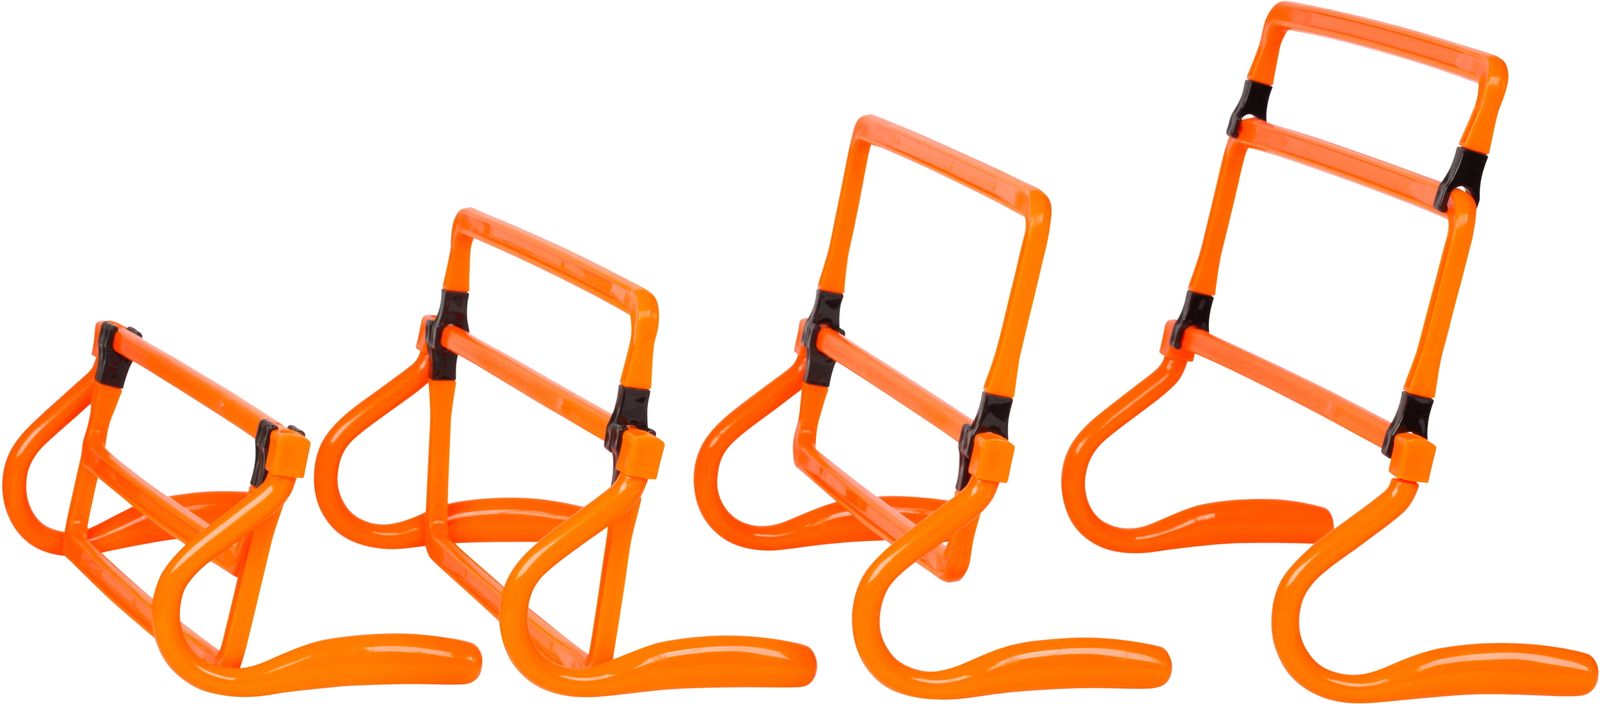 送料無料 Trademark Innovations による調節可能なスピードトレーニングハードル5個セット (オレンジ) 楽天海外通販 Set of 5 Adjustable Speed Training Hurdles By Trademark Innovations (Orange)